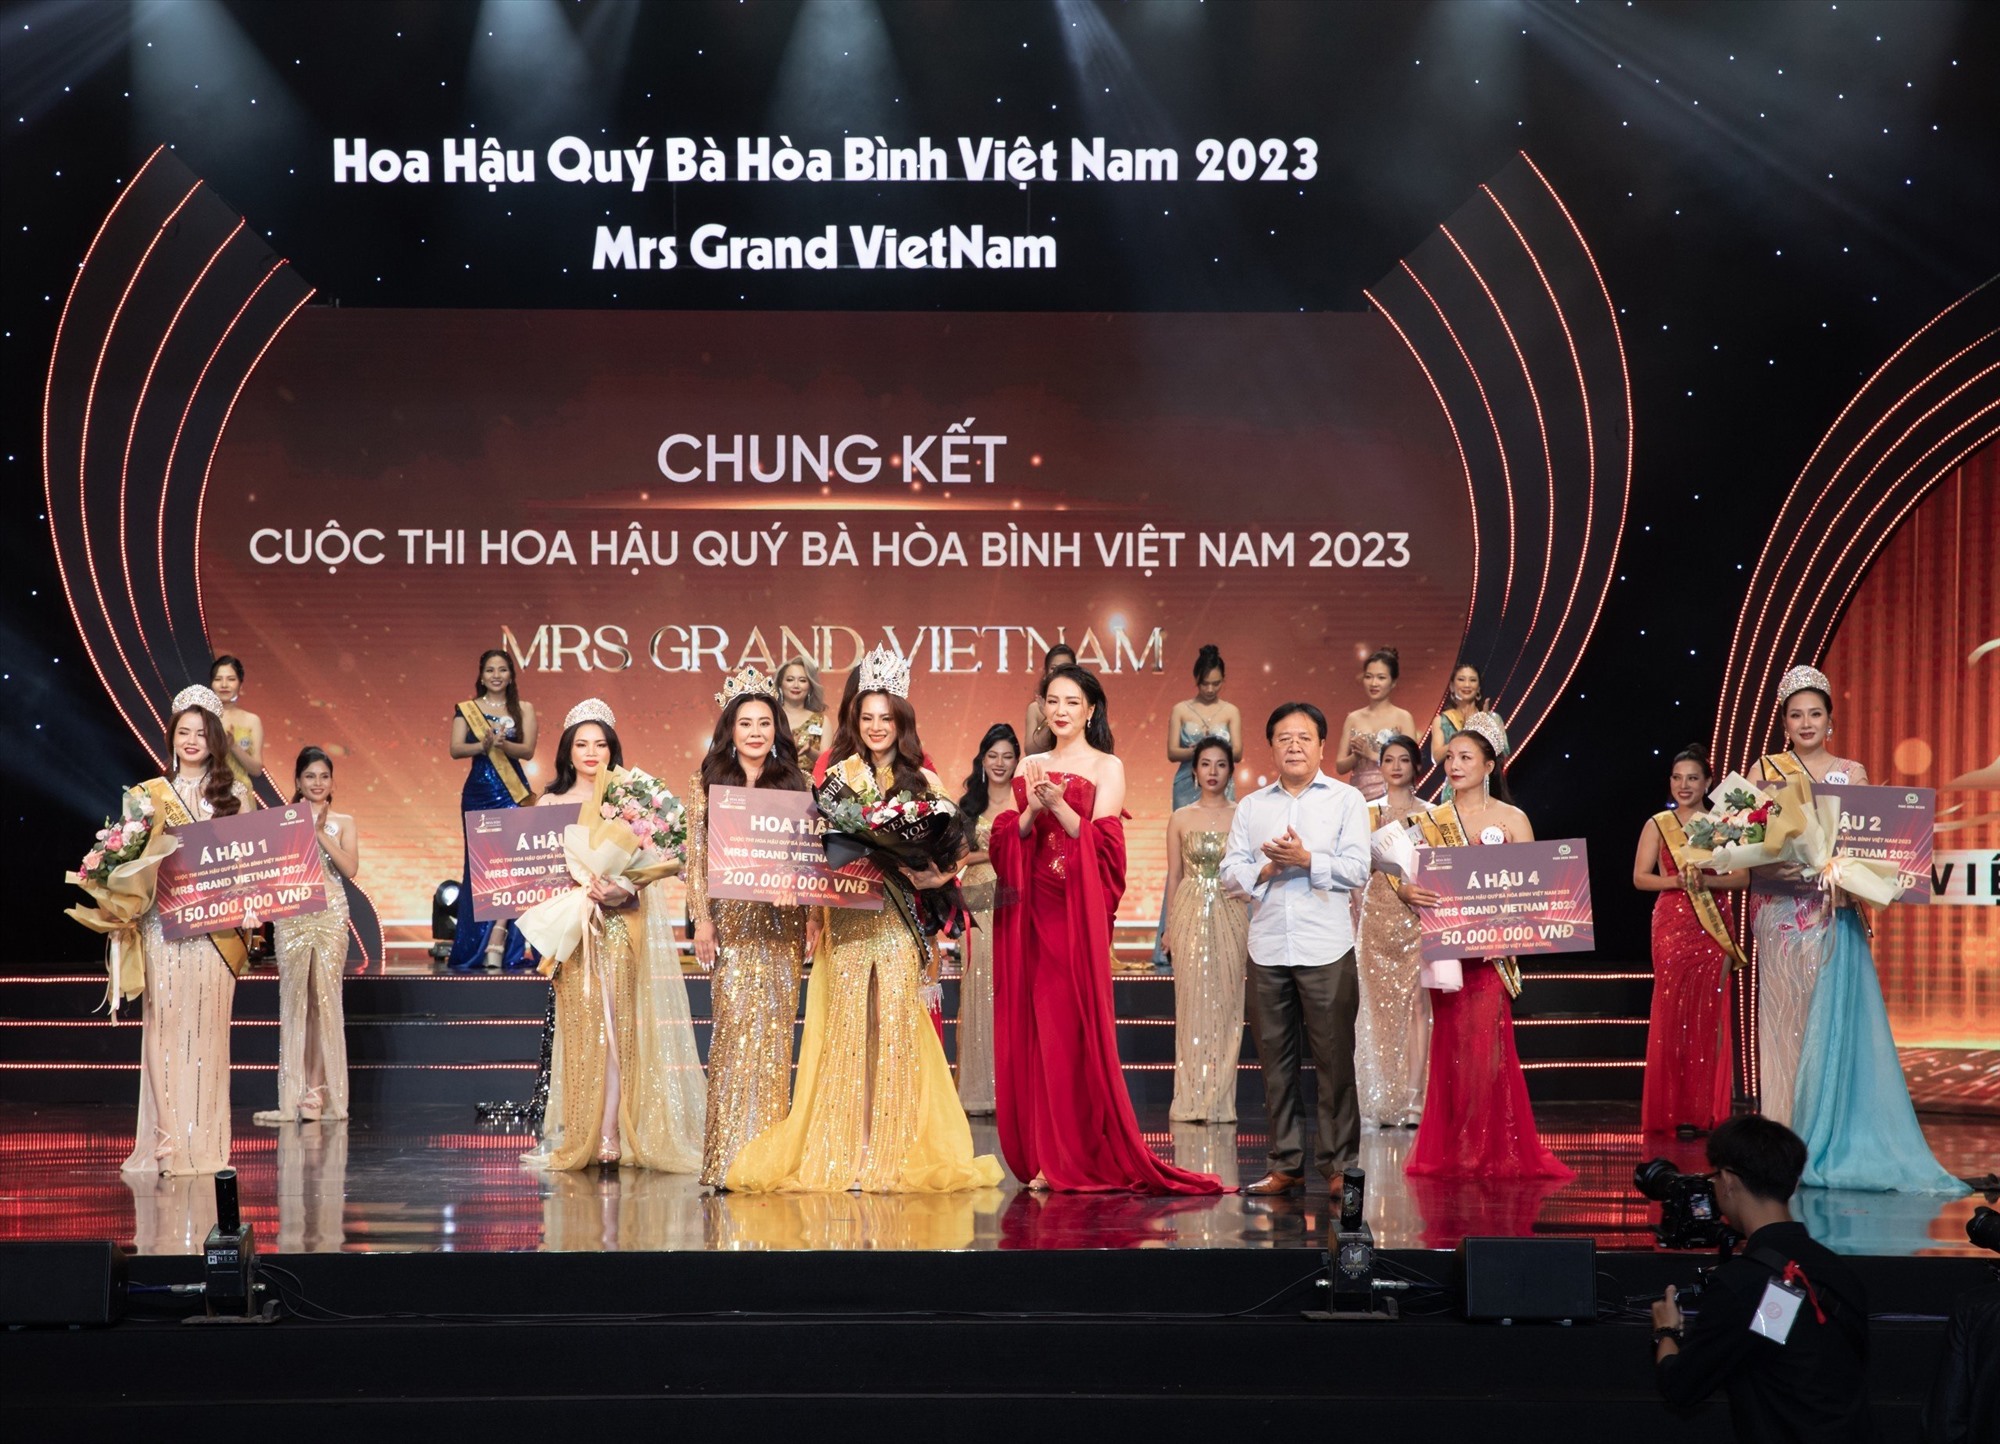 Thí sinh Đoàn Thị Thu Hằng đăng quang ngôi vị cao nhất của cuộc thi Hoa hậu Quý bà Hoà bình Việt Nam 2023